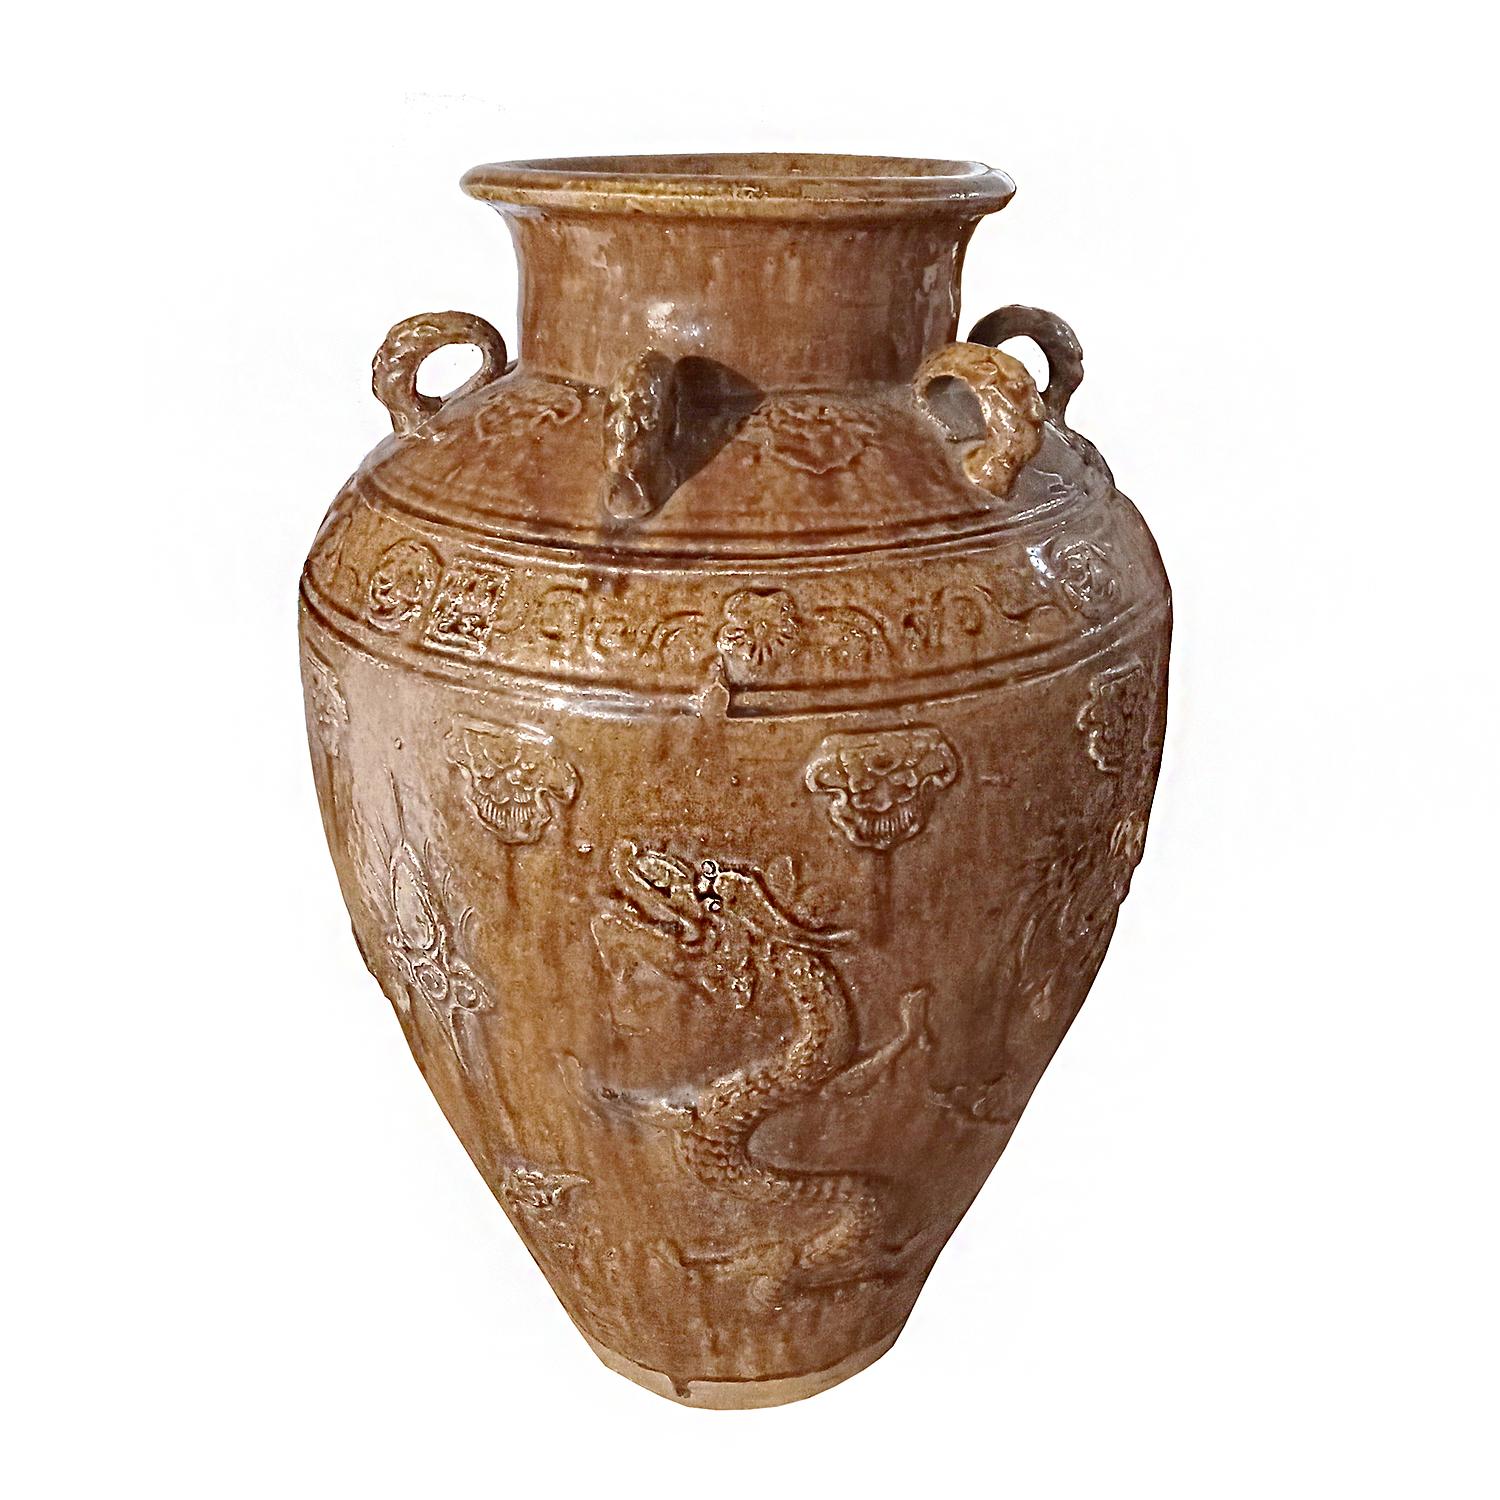 Großes Keramikgefäß / Vase / Urne aus Bali, Indonesien, Ende des 20. Jahrhunderts, handgefertigt. Drei dekorative Griffe, glänzende braune Glasur und Basrelief mit klassischem asiatischem Drachenmuster. 

Kann im Innen- und Außenbereich verwendet